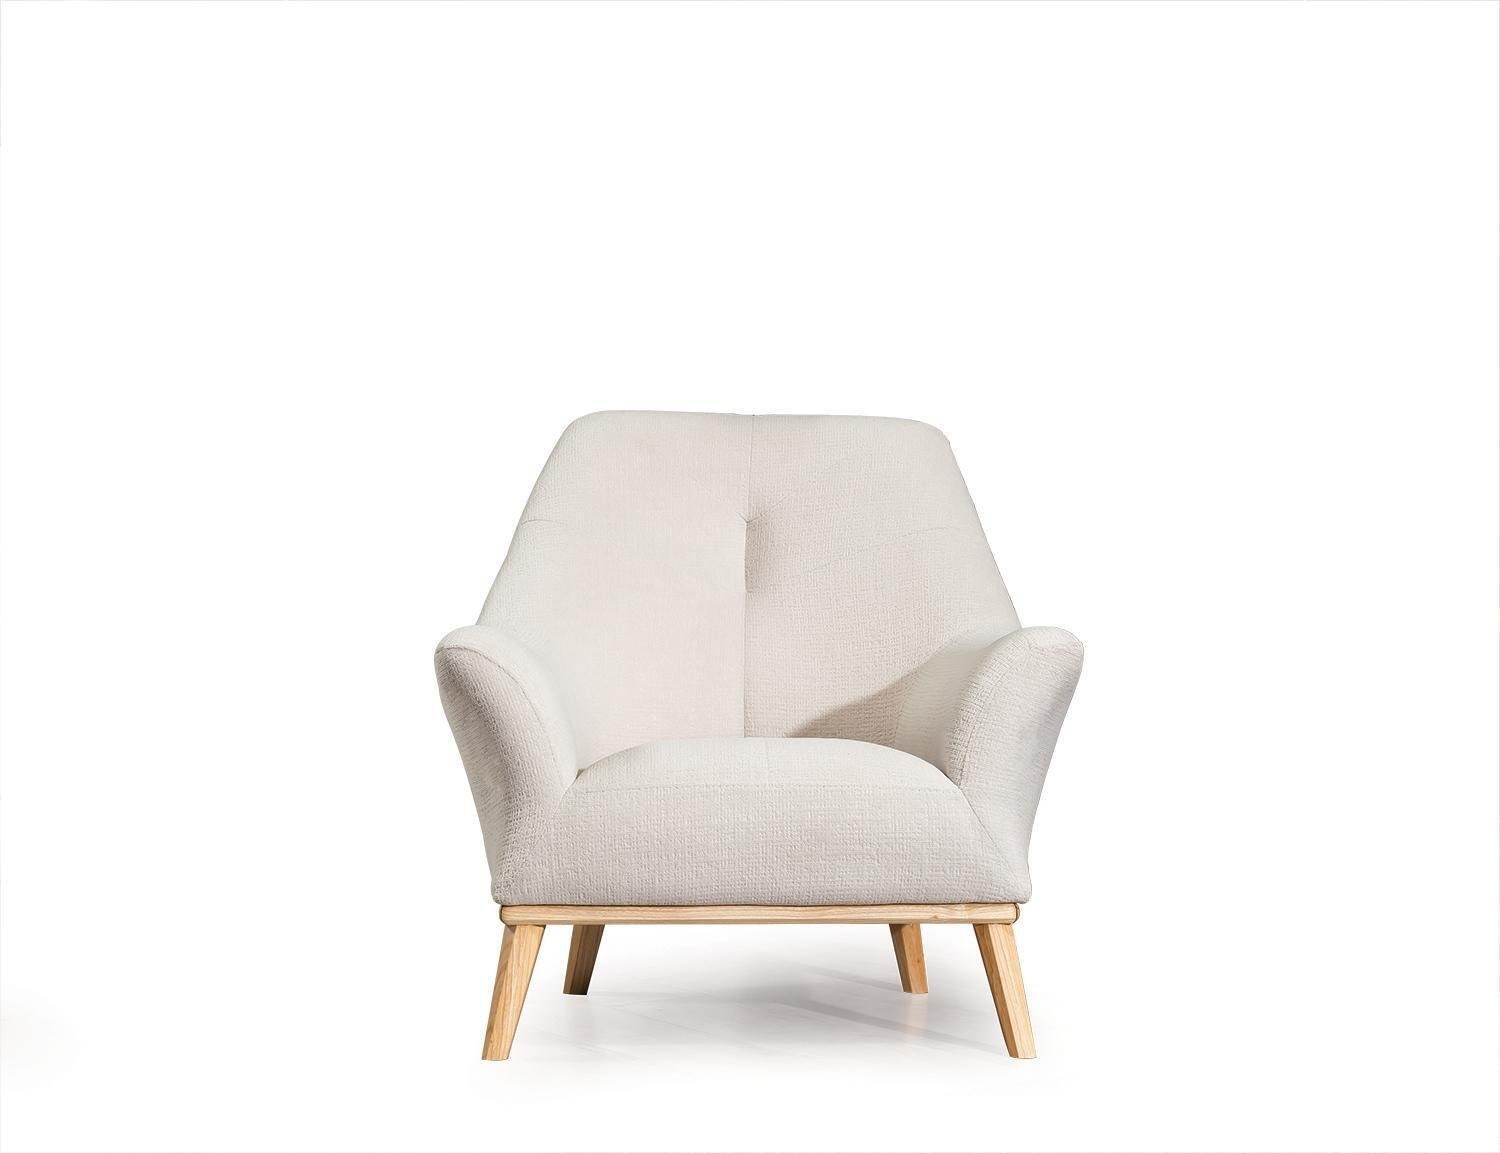 Textil Design Relax 1 weiß Wohnzimmer Club Sessel Möbel Luxus JVmoebel Sessel Sitzer